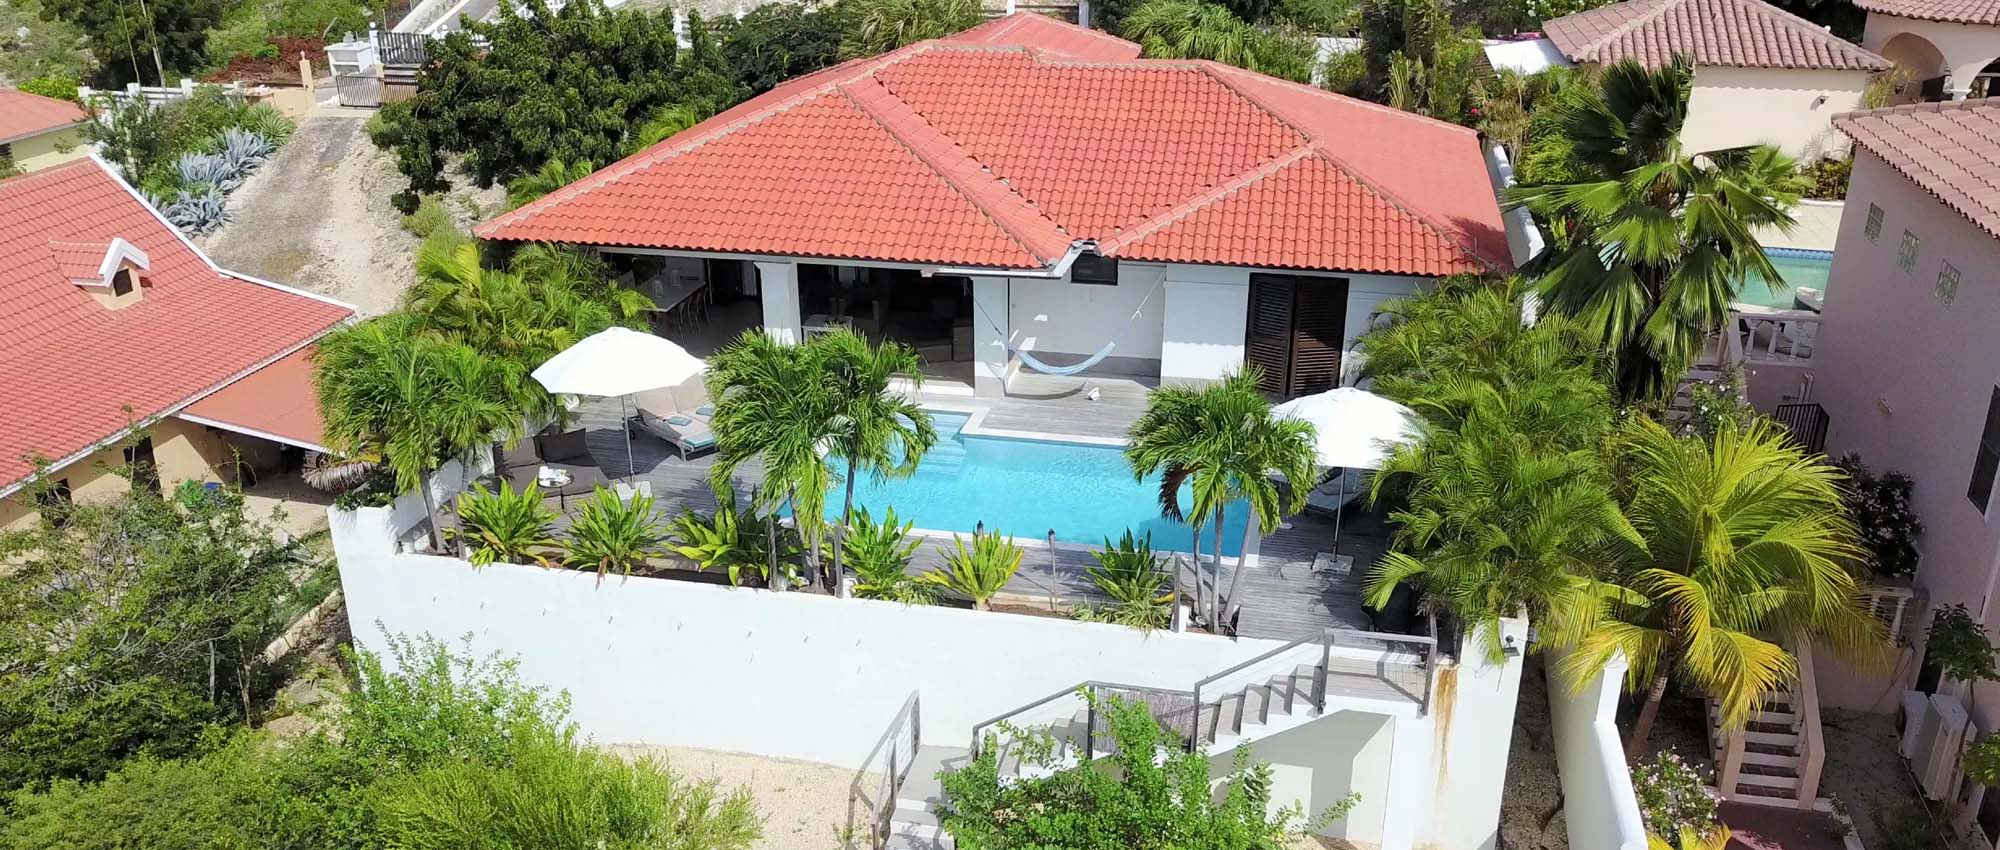 Luchtfoto van zwembad in achtertuin omgeven door palmbomen